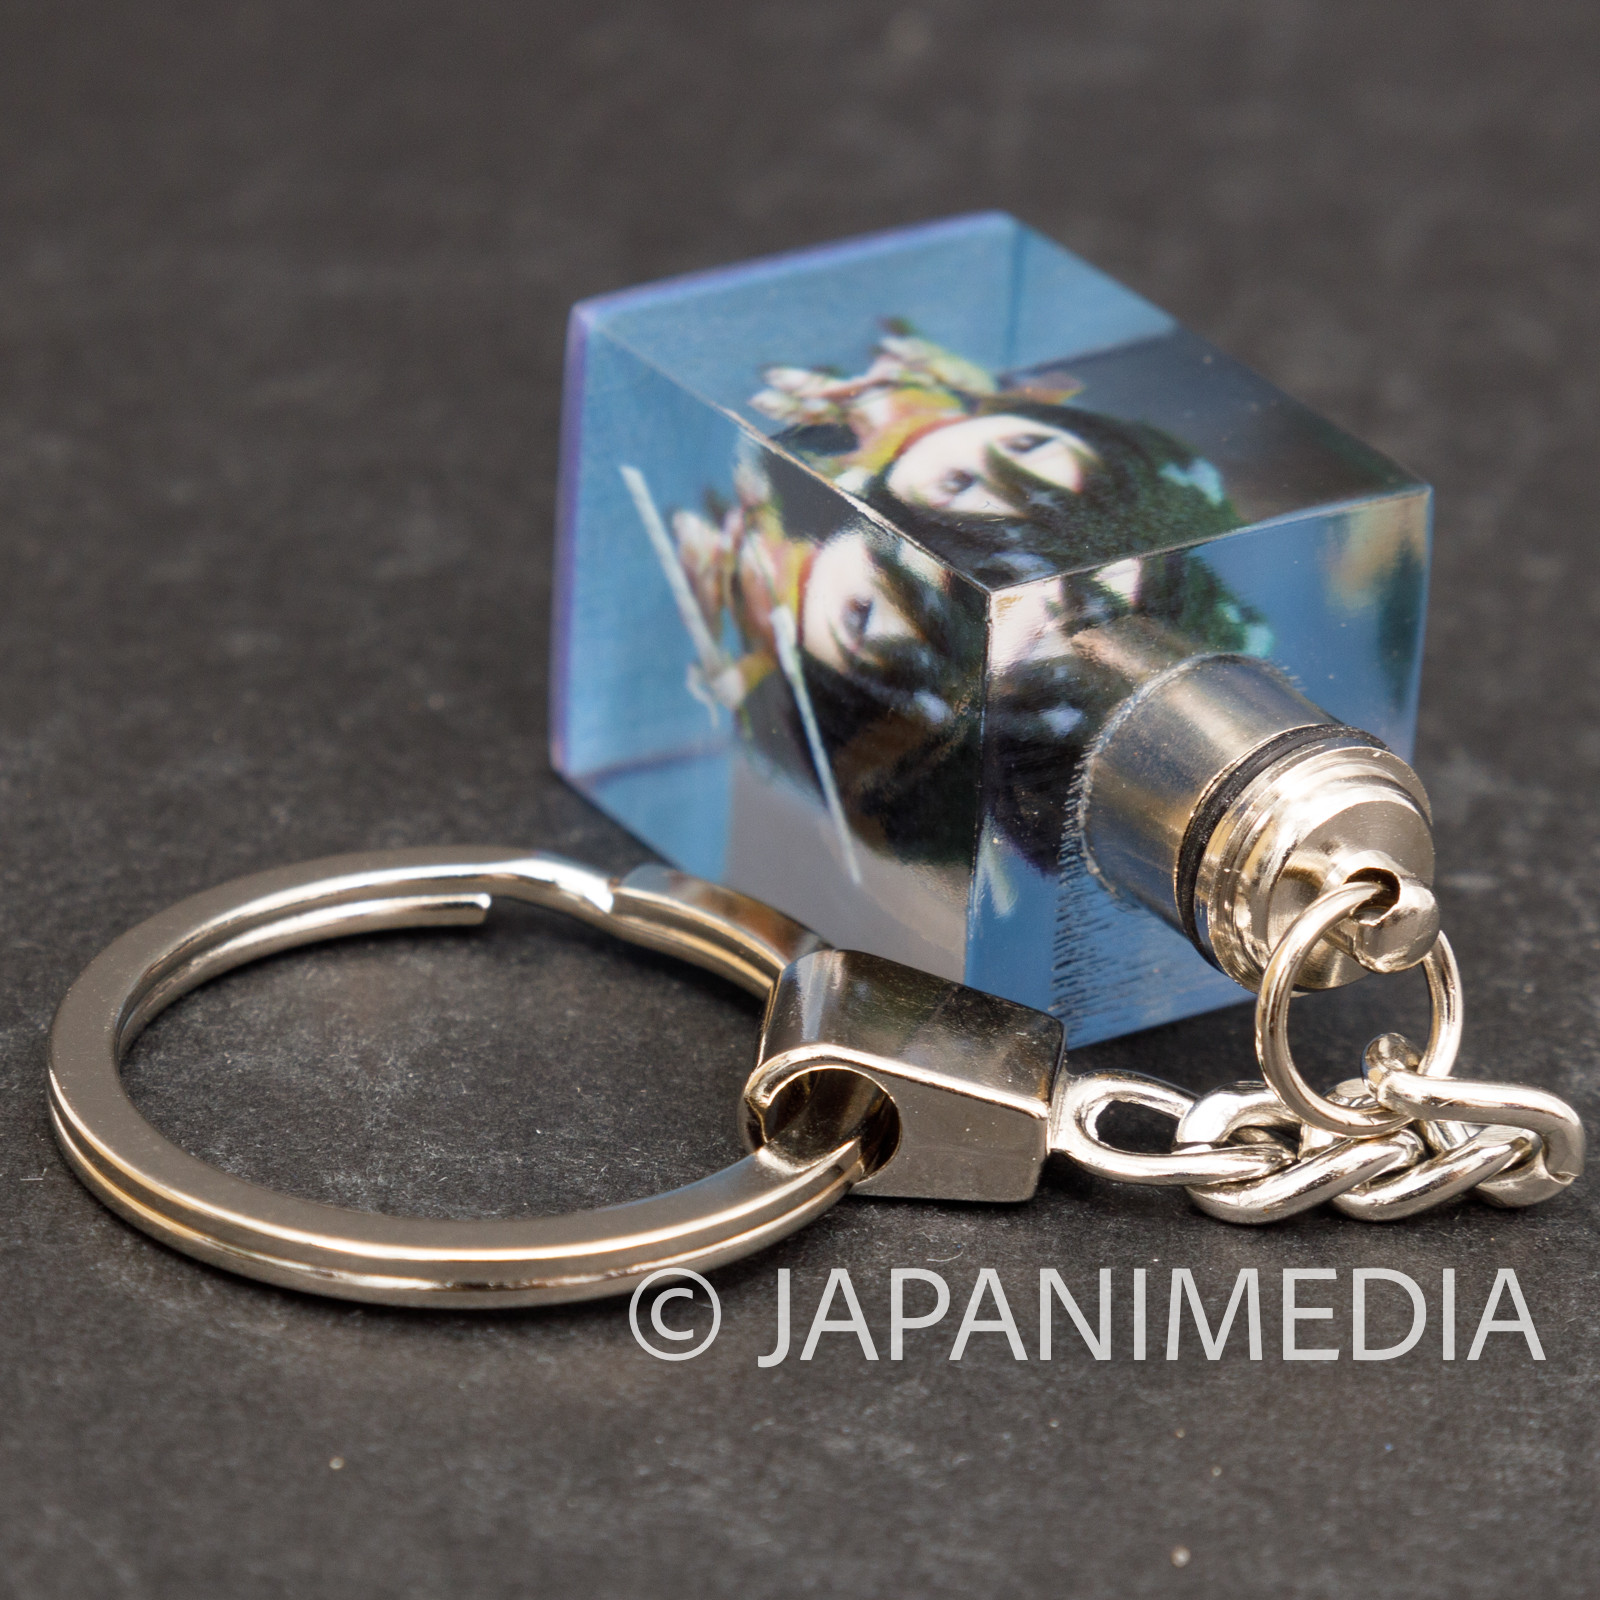 Attack on Titan Mikasa Ackerman Mini Figure in Light up Cube Keychain JAPAN